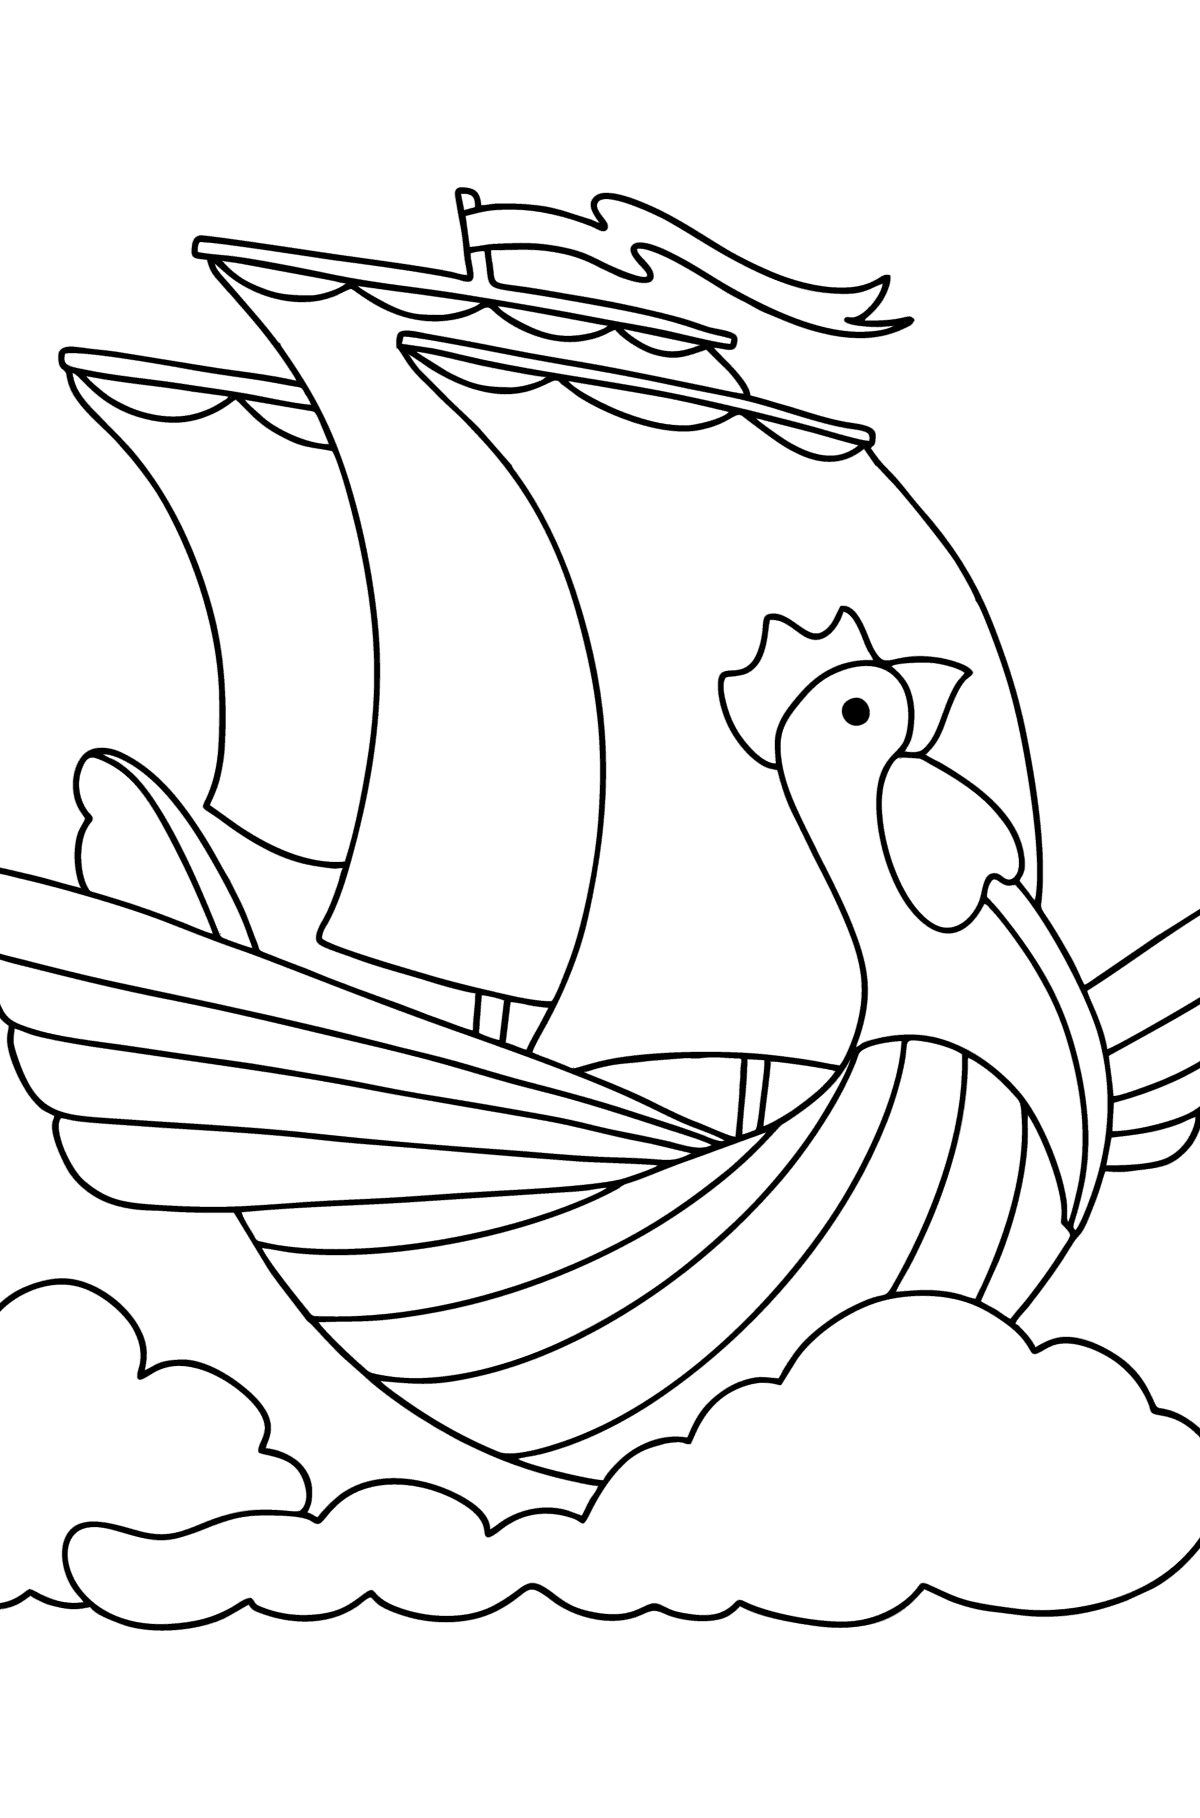 Ausmalbild Fliegendes Schiff - Malvorlagen für Kinder